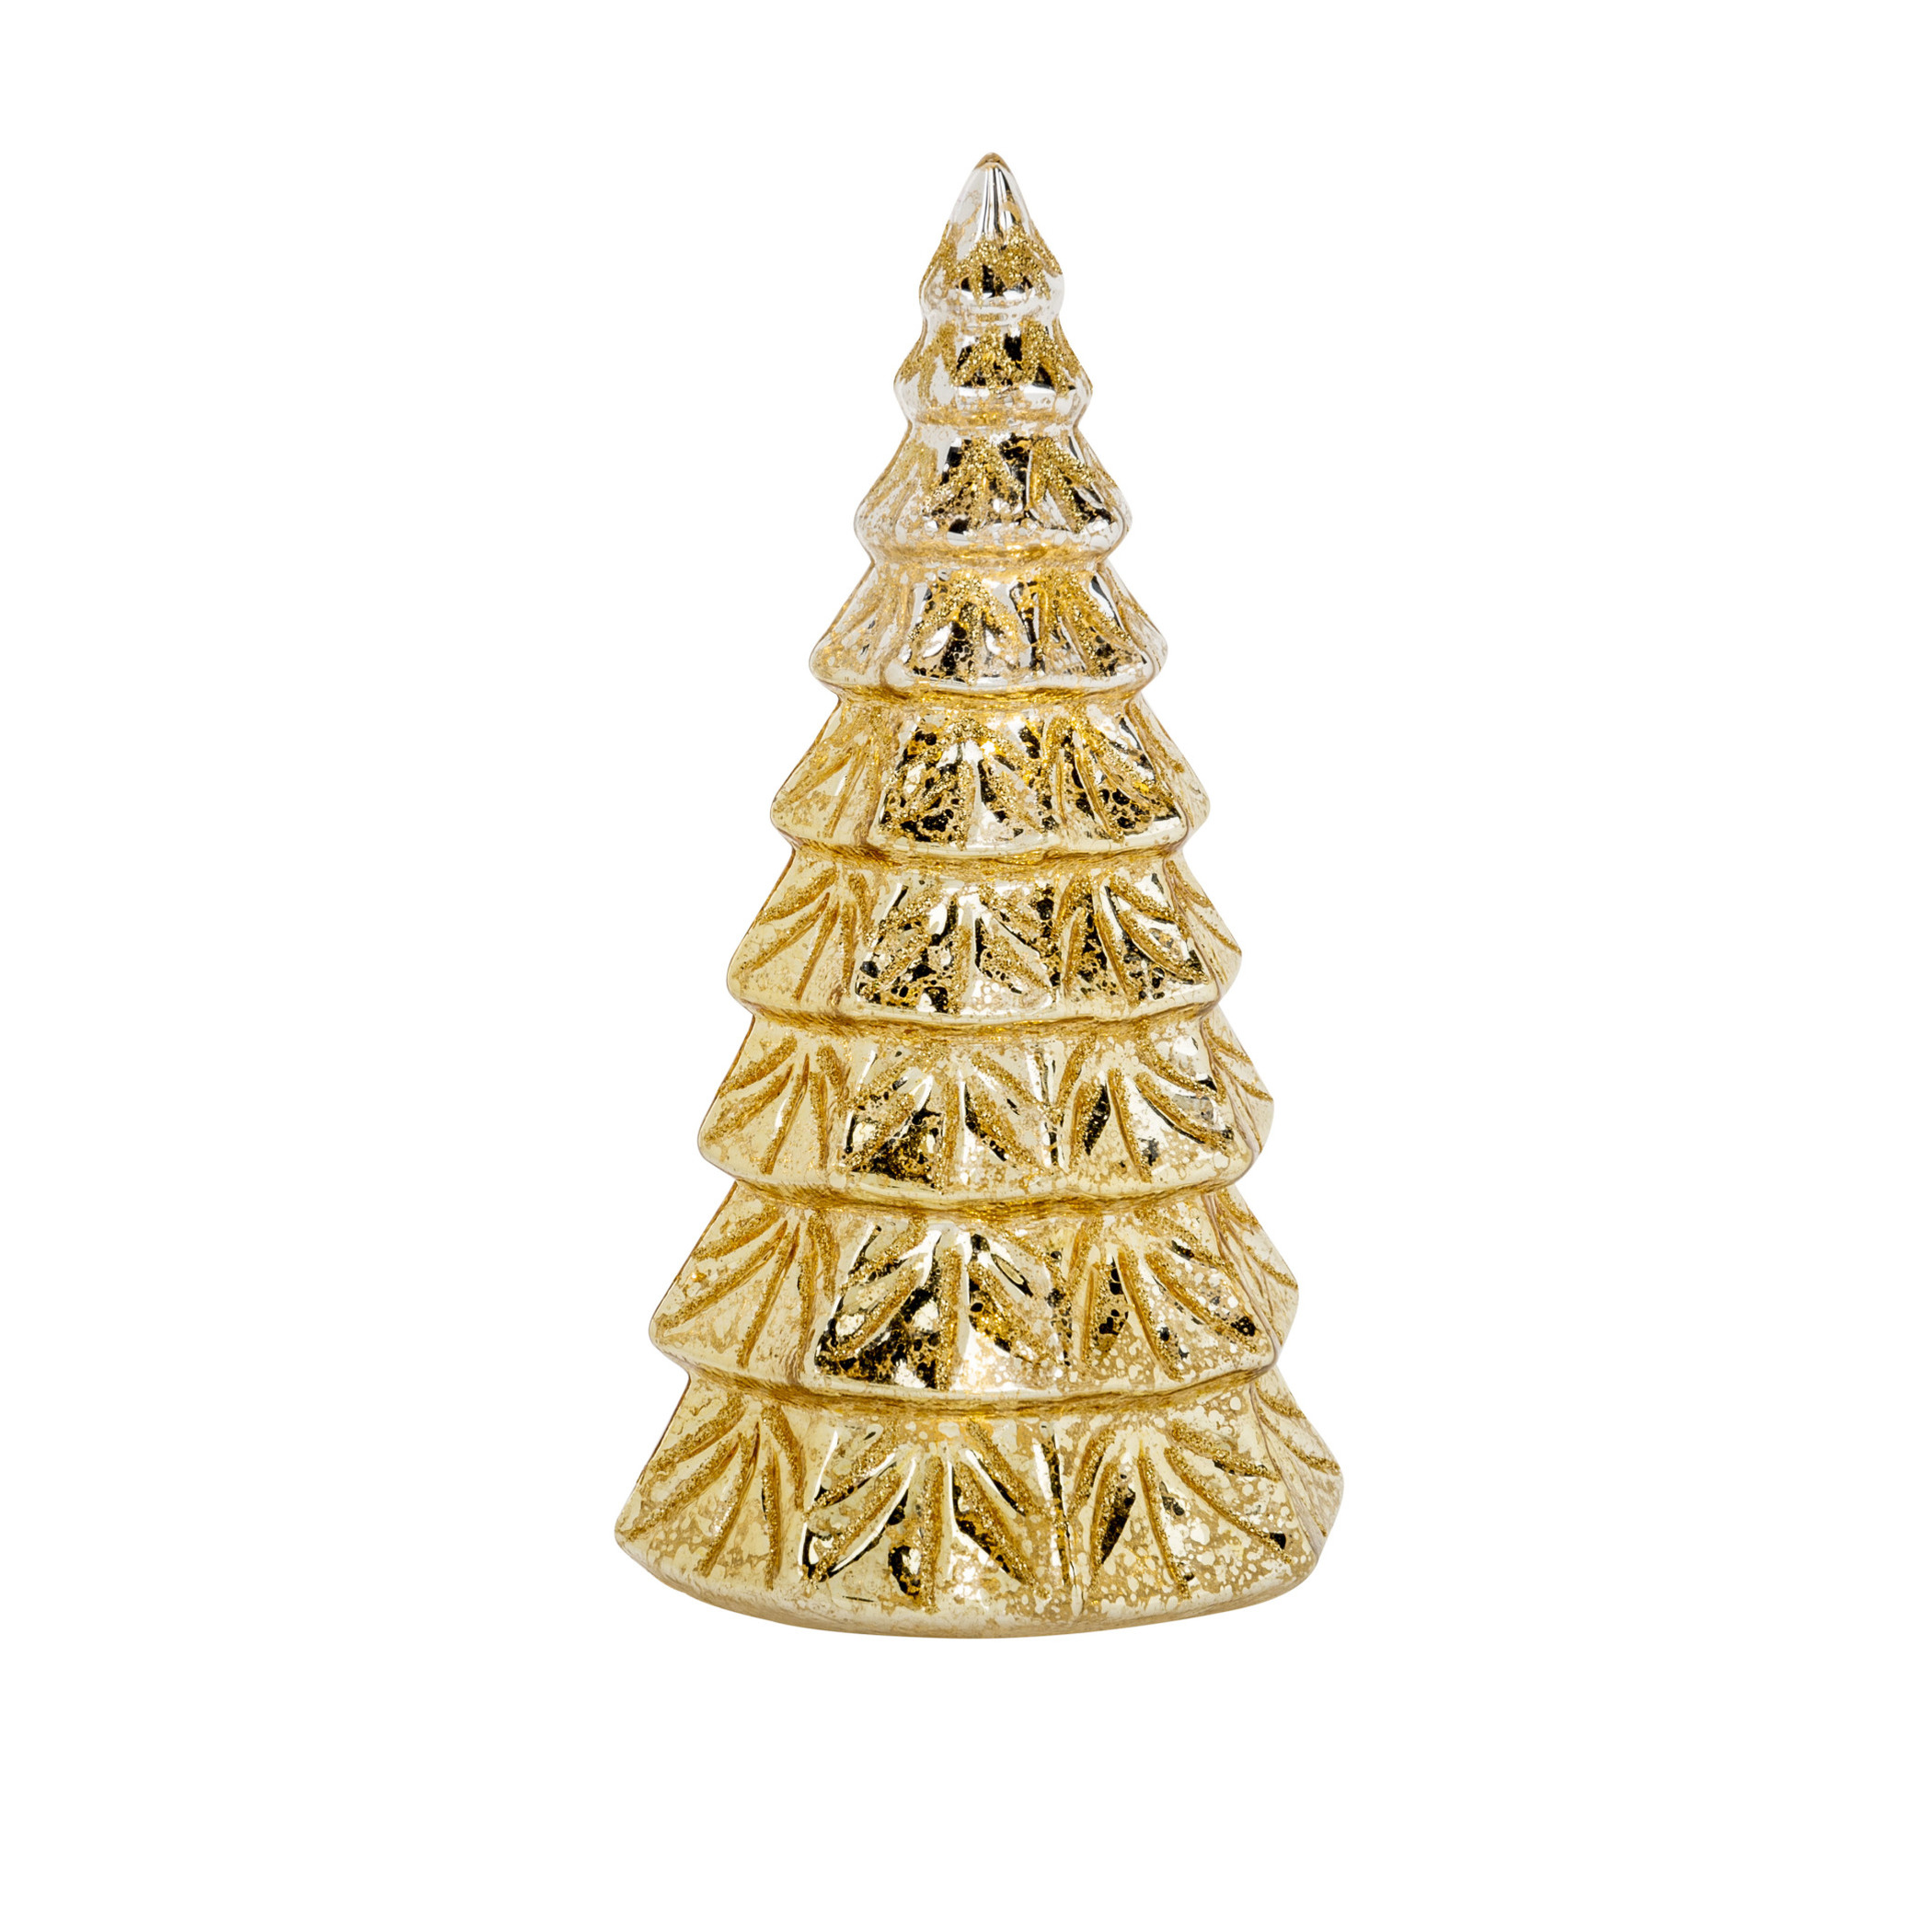 1x stuks led kaarsen kerstboom kaars goud D9 x H19 cm